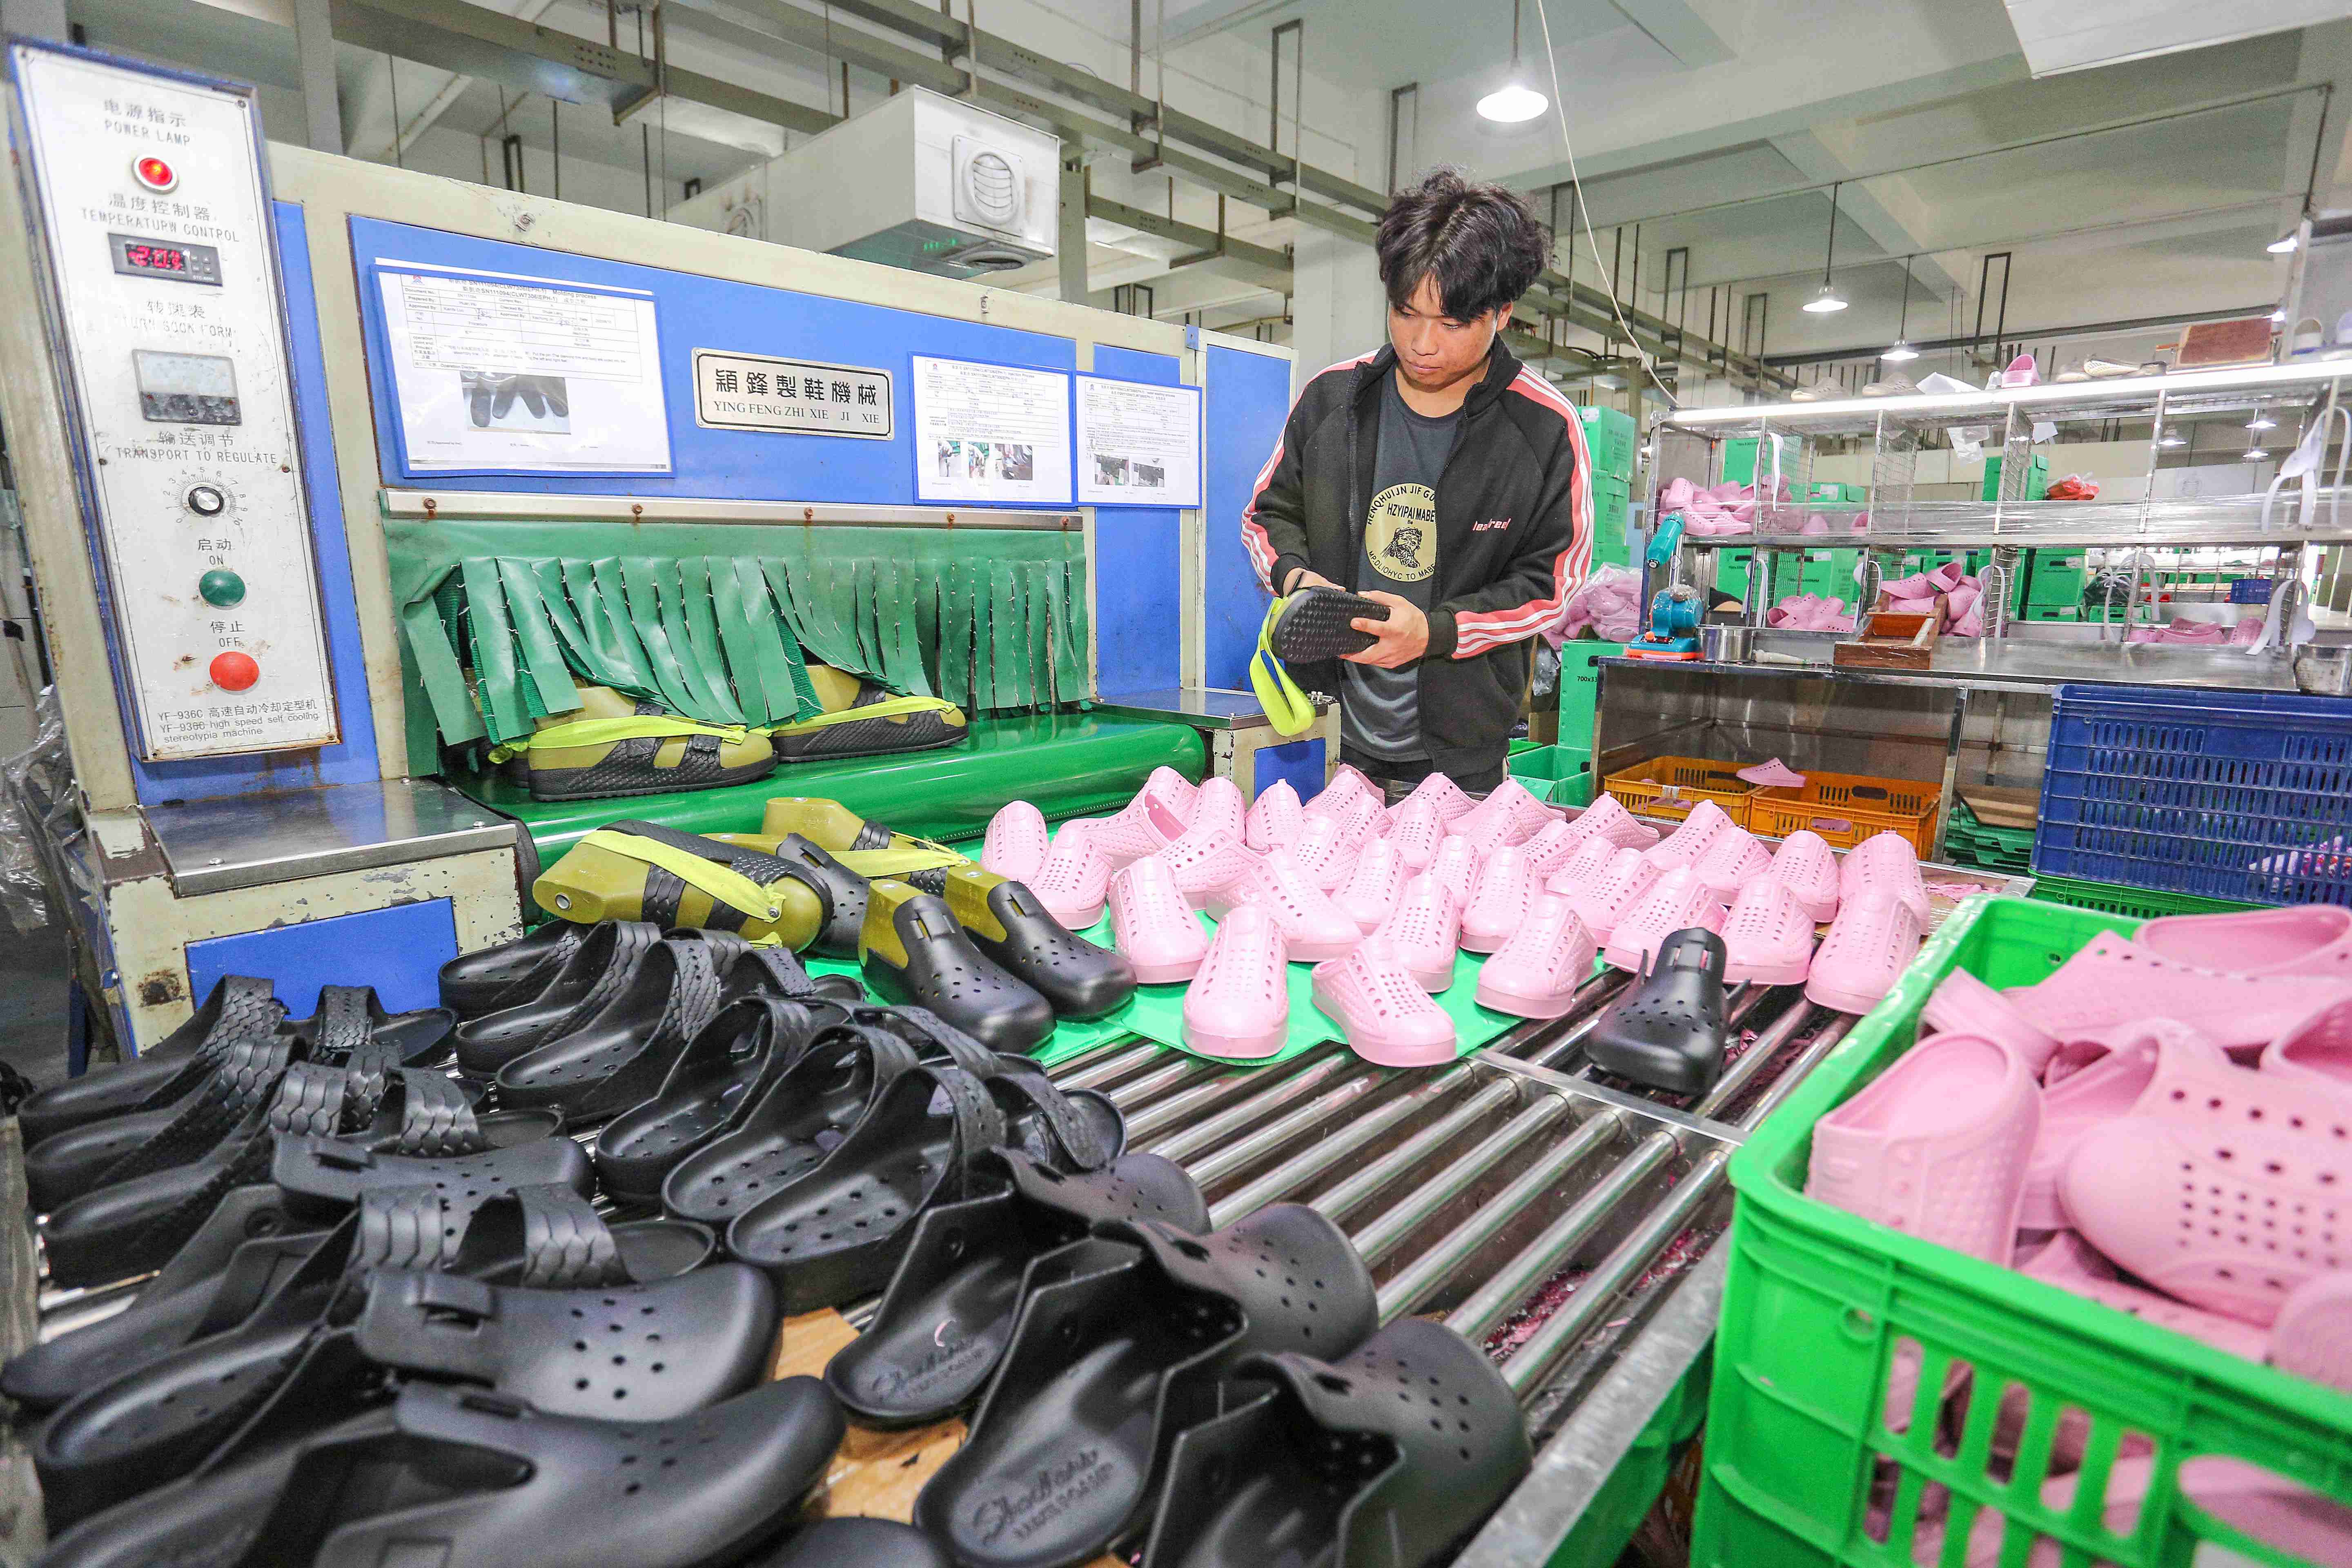 惠东发布制鞋产业发展规划，制定2025年目标—— 鞋业制造工业总产值要达千亿元 - 惠东鞋业 - 惠州市鞋业商会